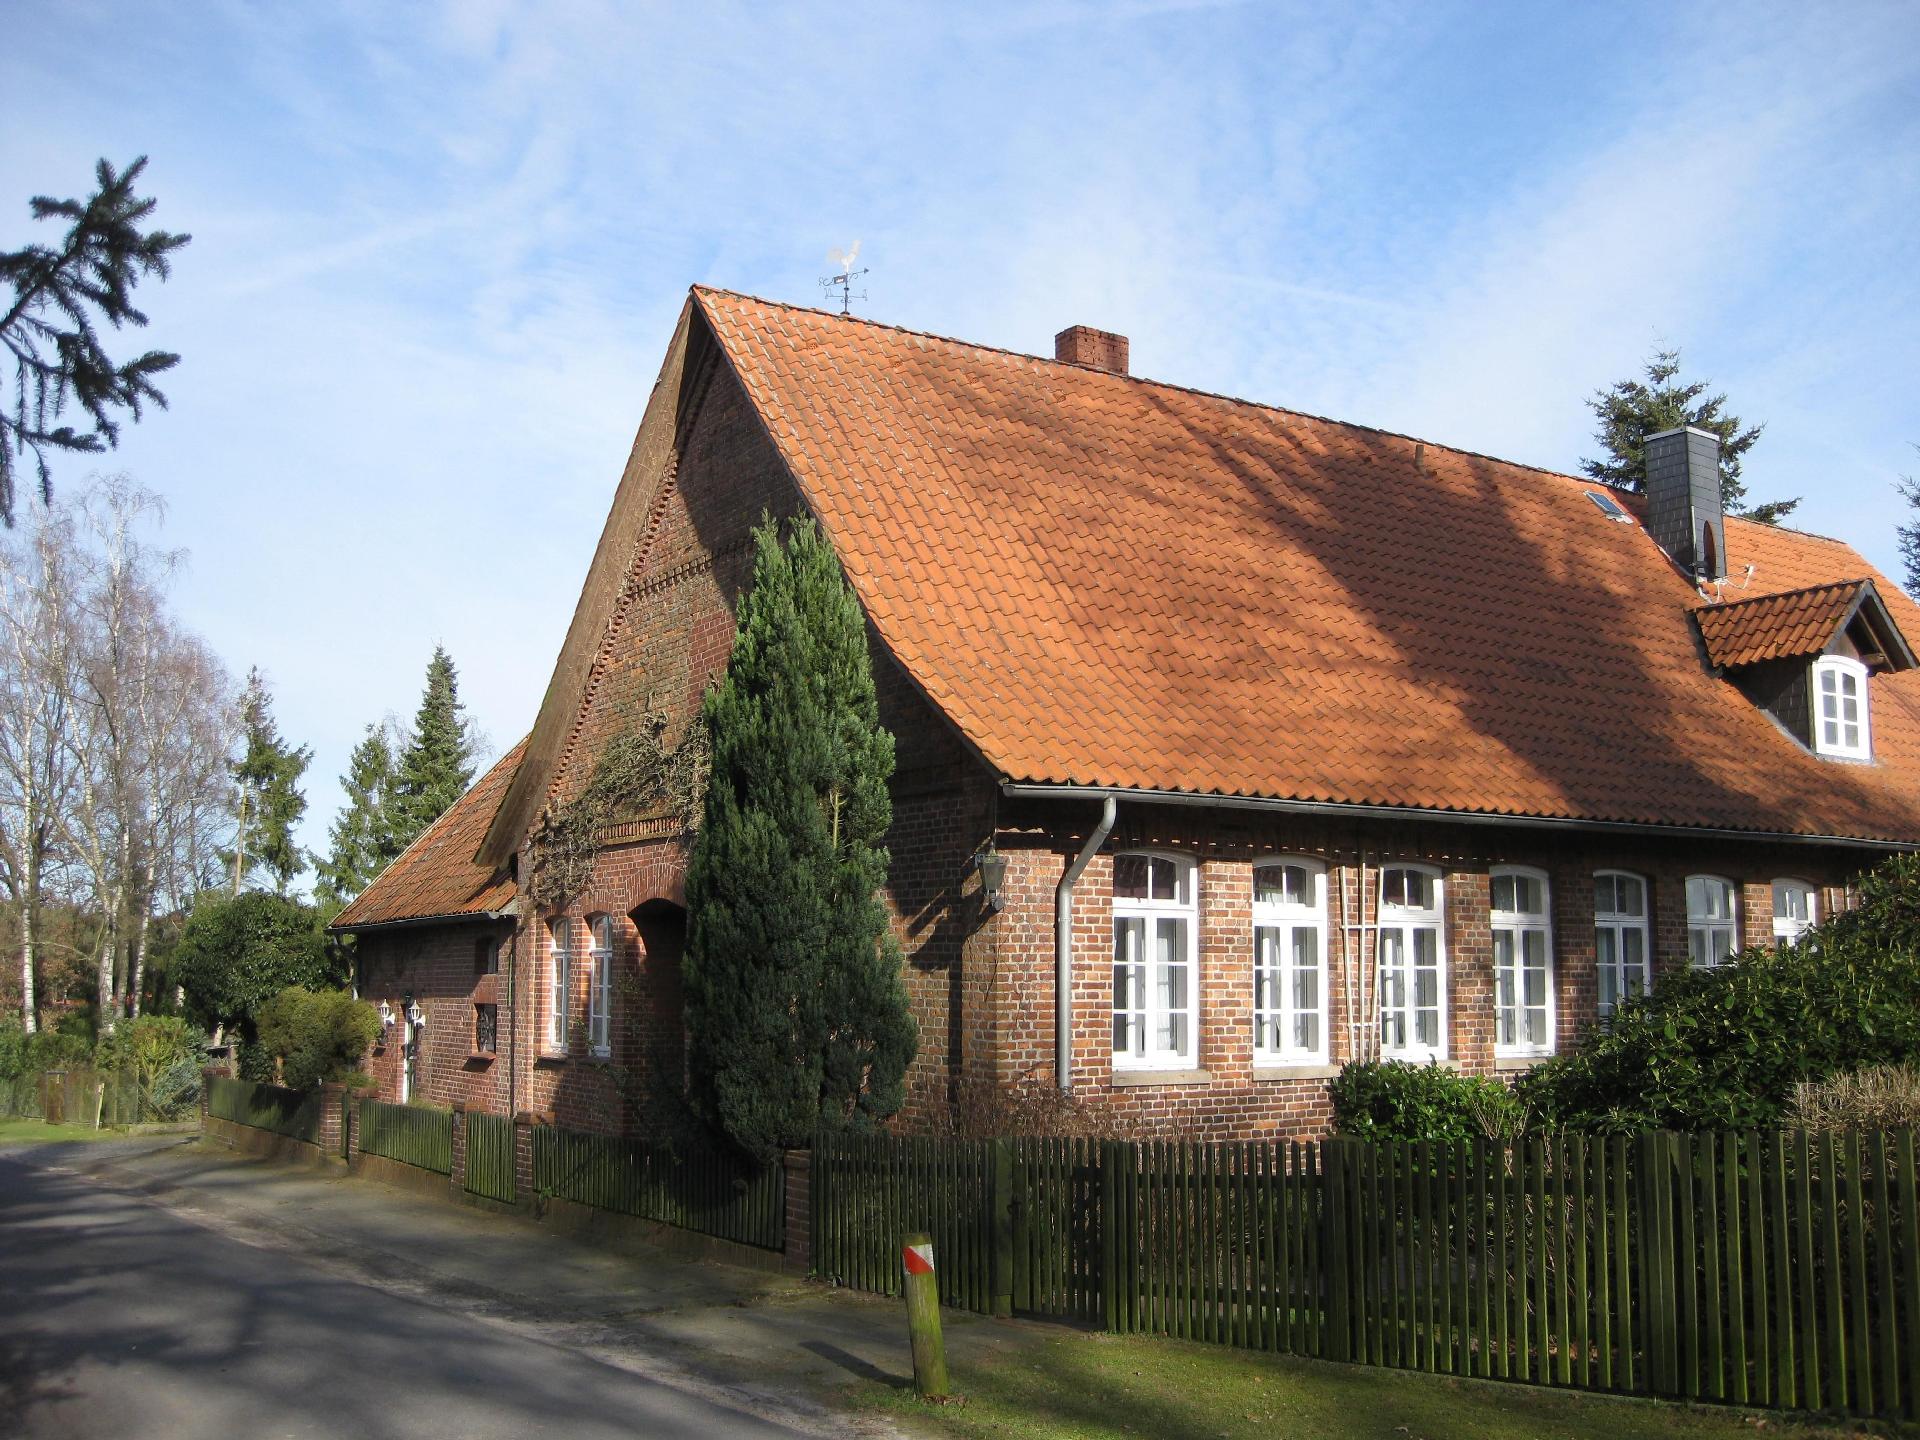 Ferienwohnung in ehemaliger Dorfschule am Dorfrand Ferienhaus in Mecklenburg Vorpommern